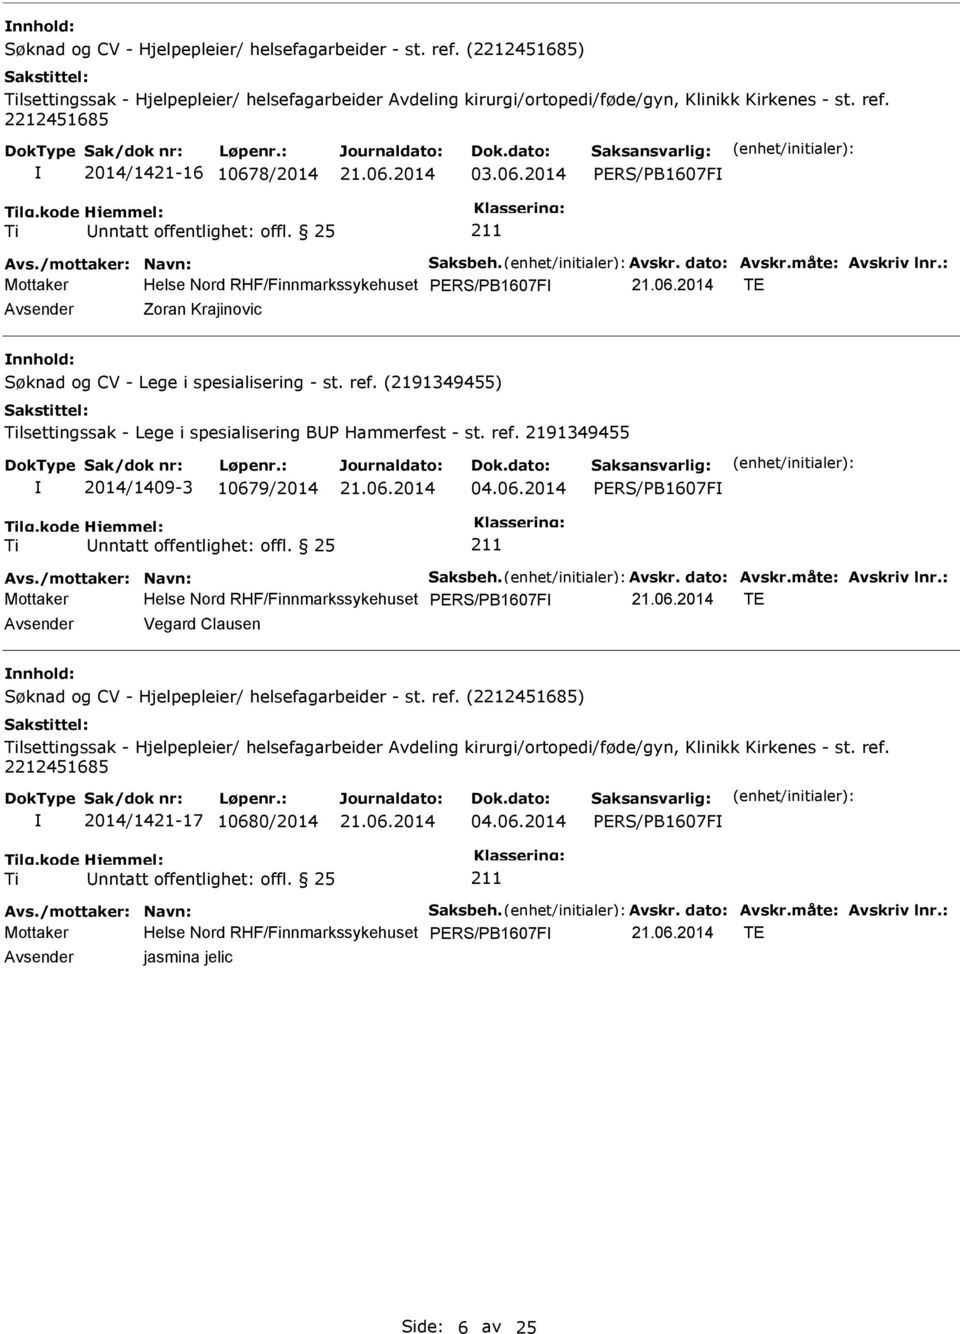 (2191349455) lsettingssak - Lege i spesialisering BUP Hammerfest - st. ref. 2191349455 2014/1409-3 1067